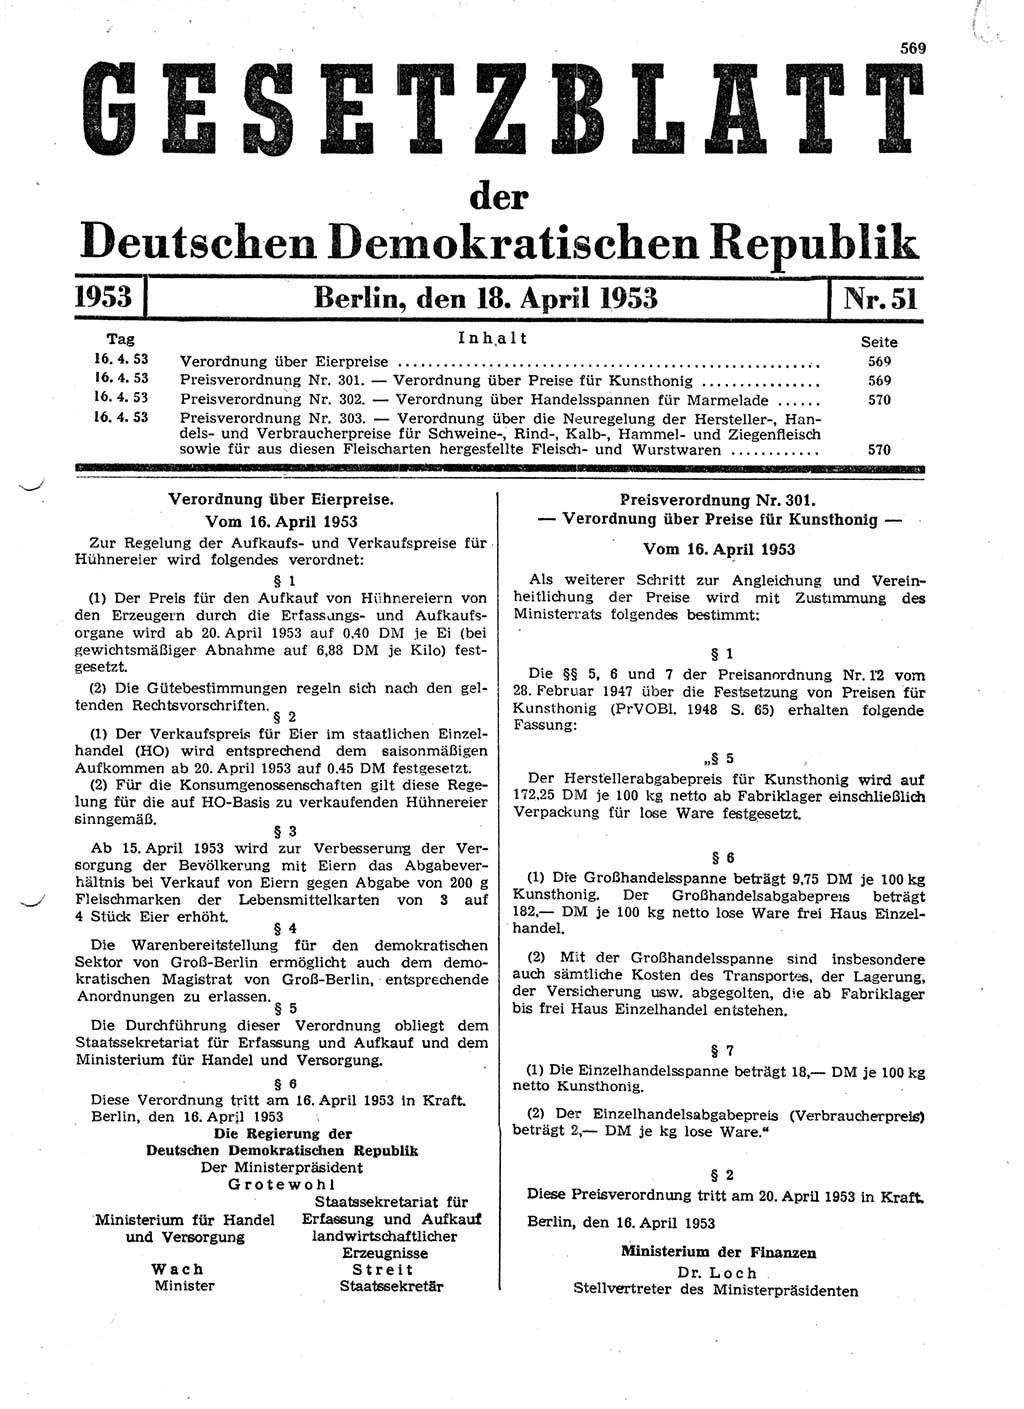 Gesetzblatt (GBl.) der Deutschen Demokratischen Republik (DDR) 1953, Seite 569 (GBl. DDR 1953, S. 569)